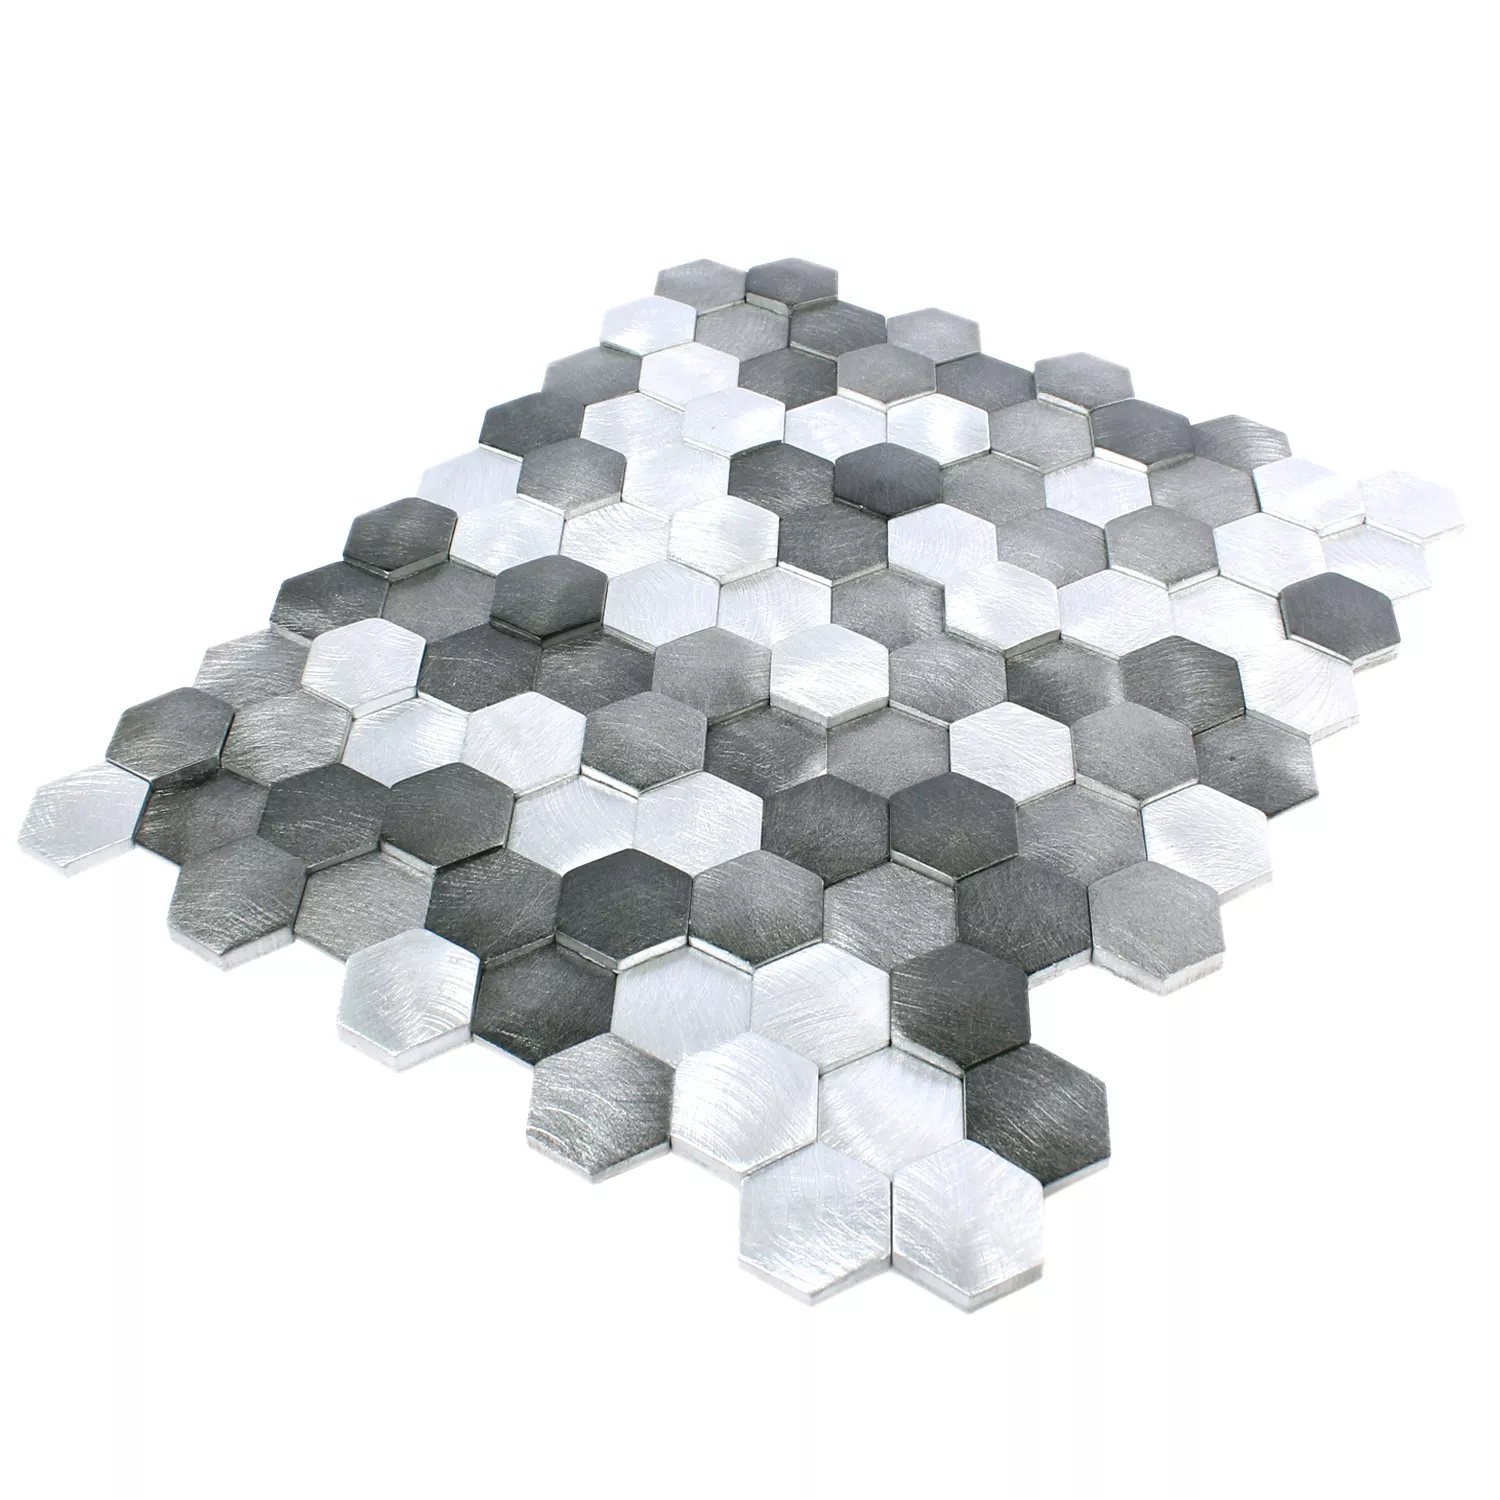 Sample Mosaic Tiles Sindos Hexagon 3D Black Silver